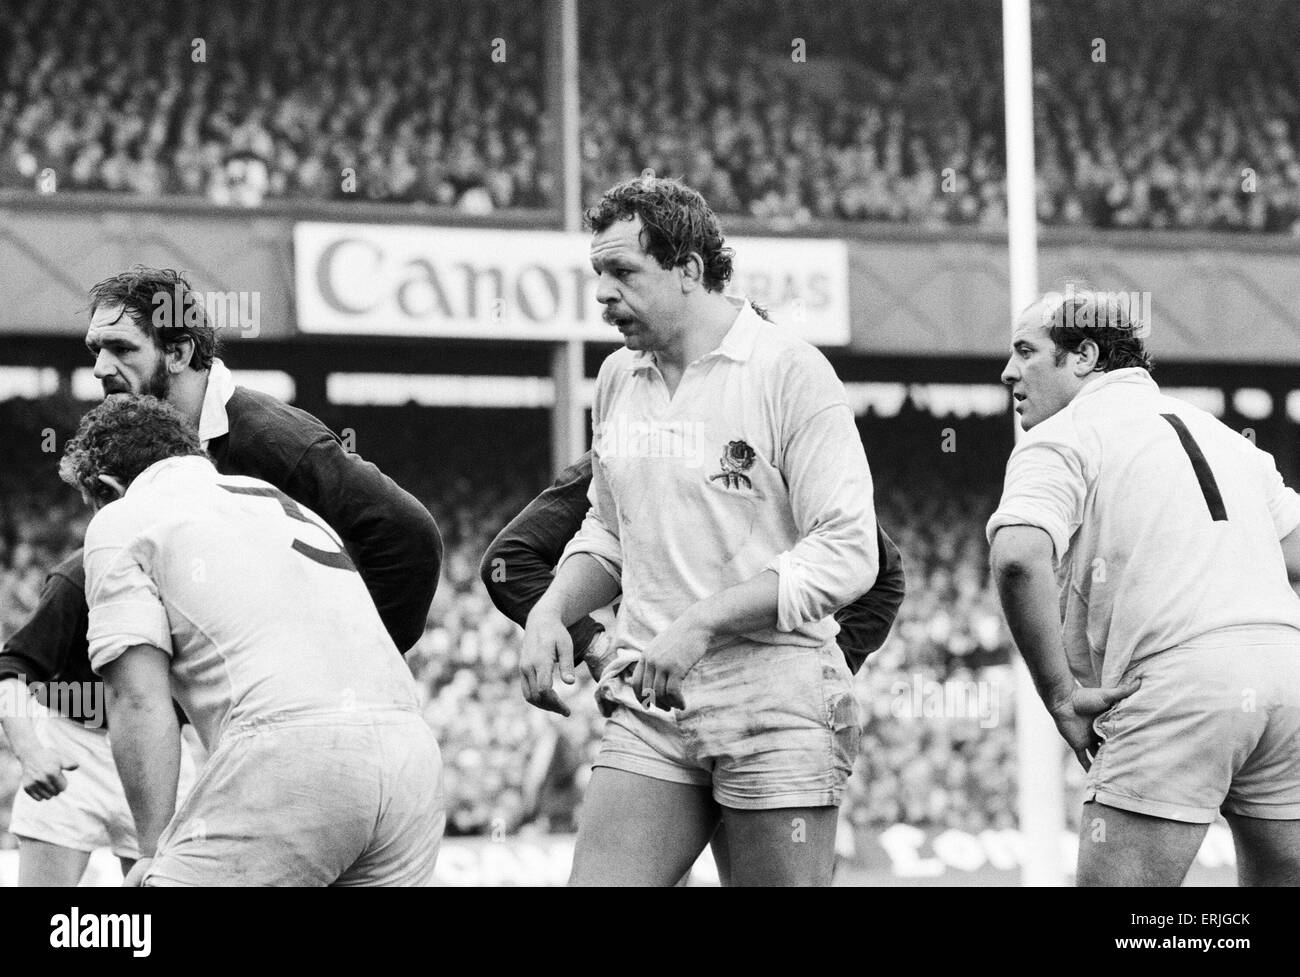 Il Rugby 5 Nazioni partita internazionale a Twickenham. Inghilterra 23 v Scozia 17. Azione durante il match che coinvolgono l'Inghilterra del Bill Beaumont. Il 21 febbraio 1981. Foto Stock